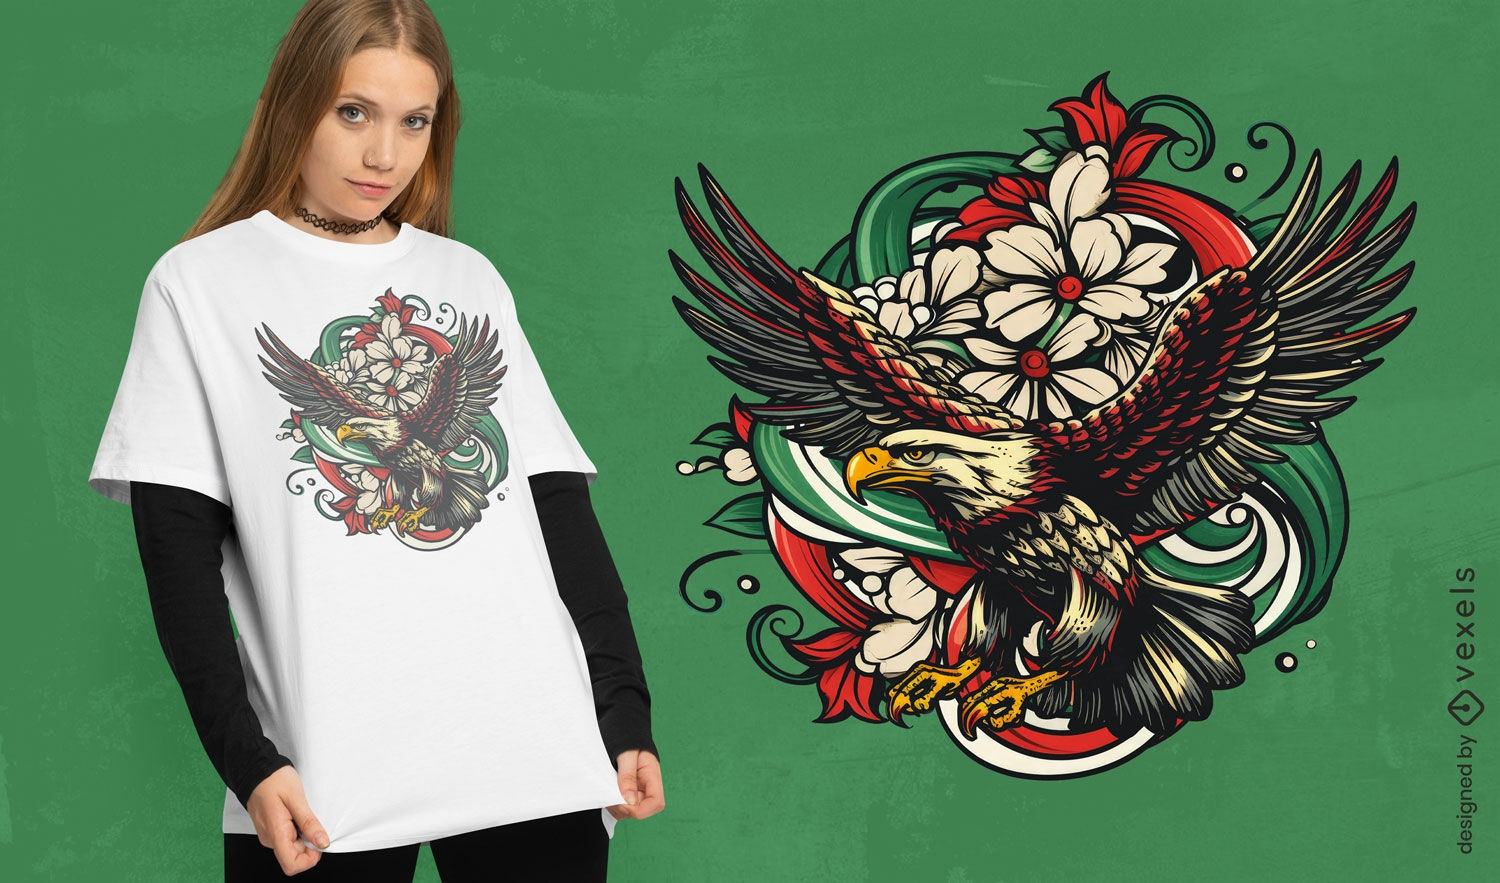 Italian eagle t-shirt design